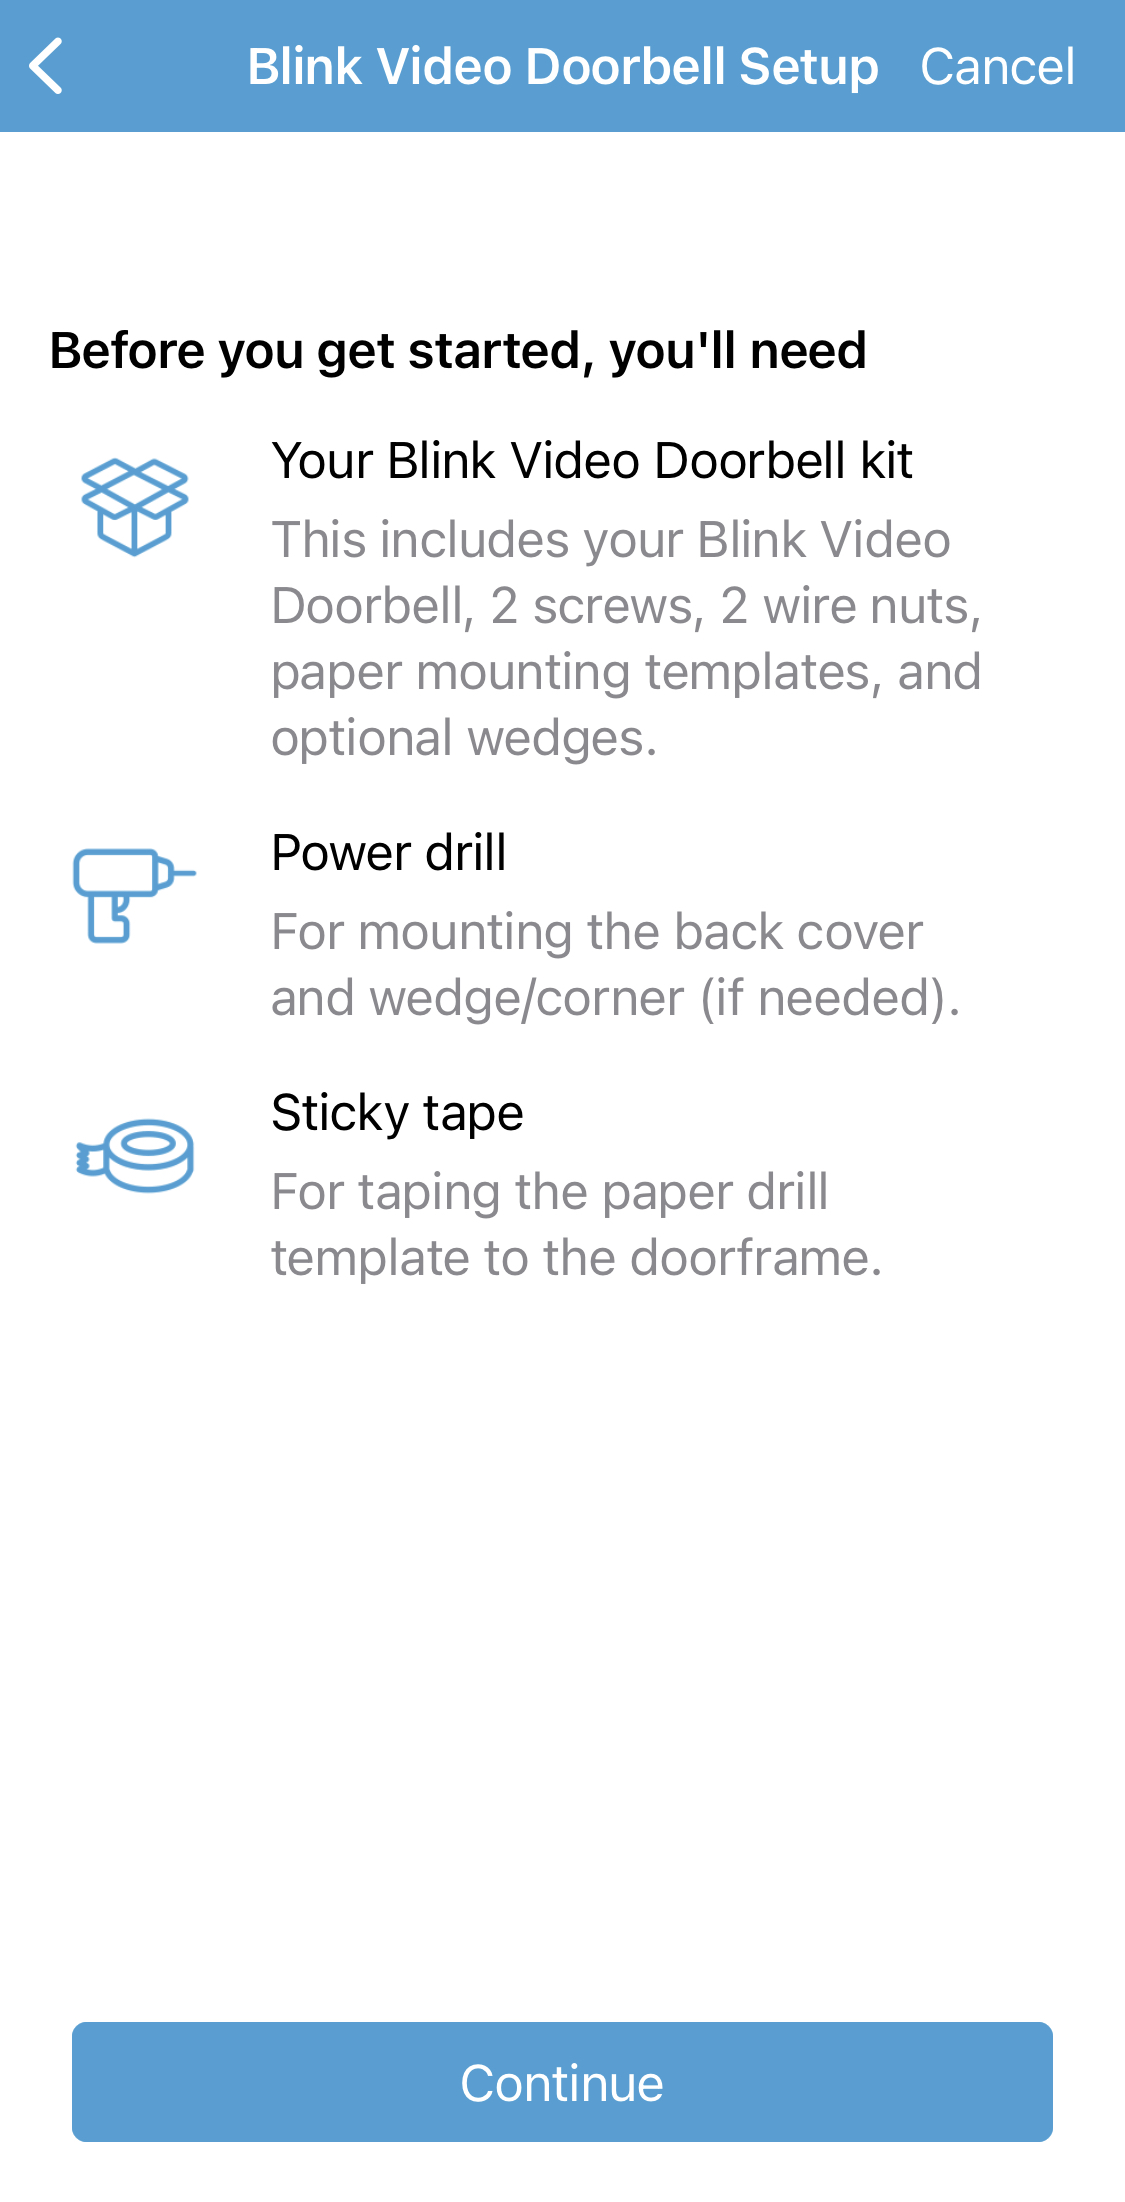 Blink Video Doorbell Setup Screen mostrando el kit una cinta adhesiva de perforación para la plantilla